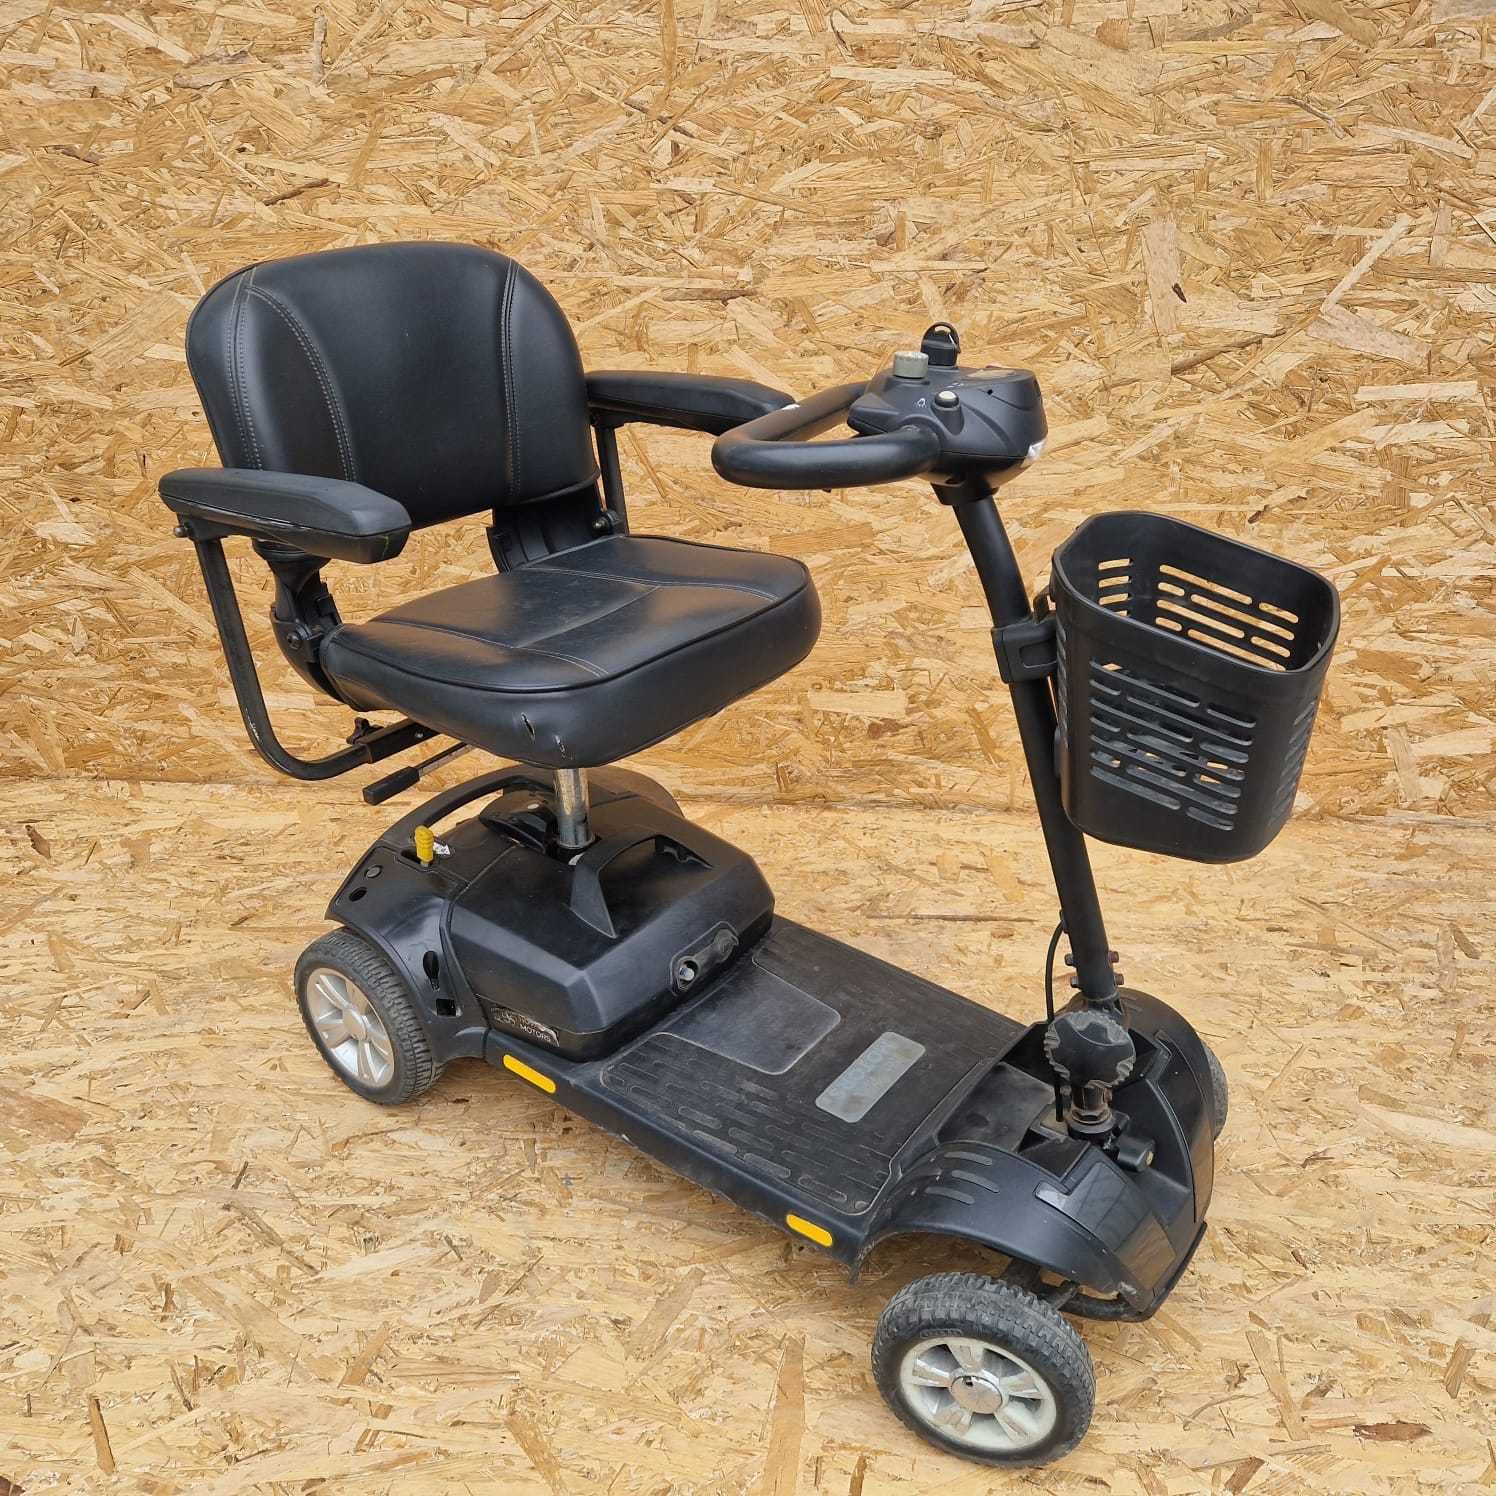 skuter wózek inwalidzki elektryczny składany do AUTA + KOSZYK nowe aku